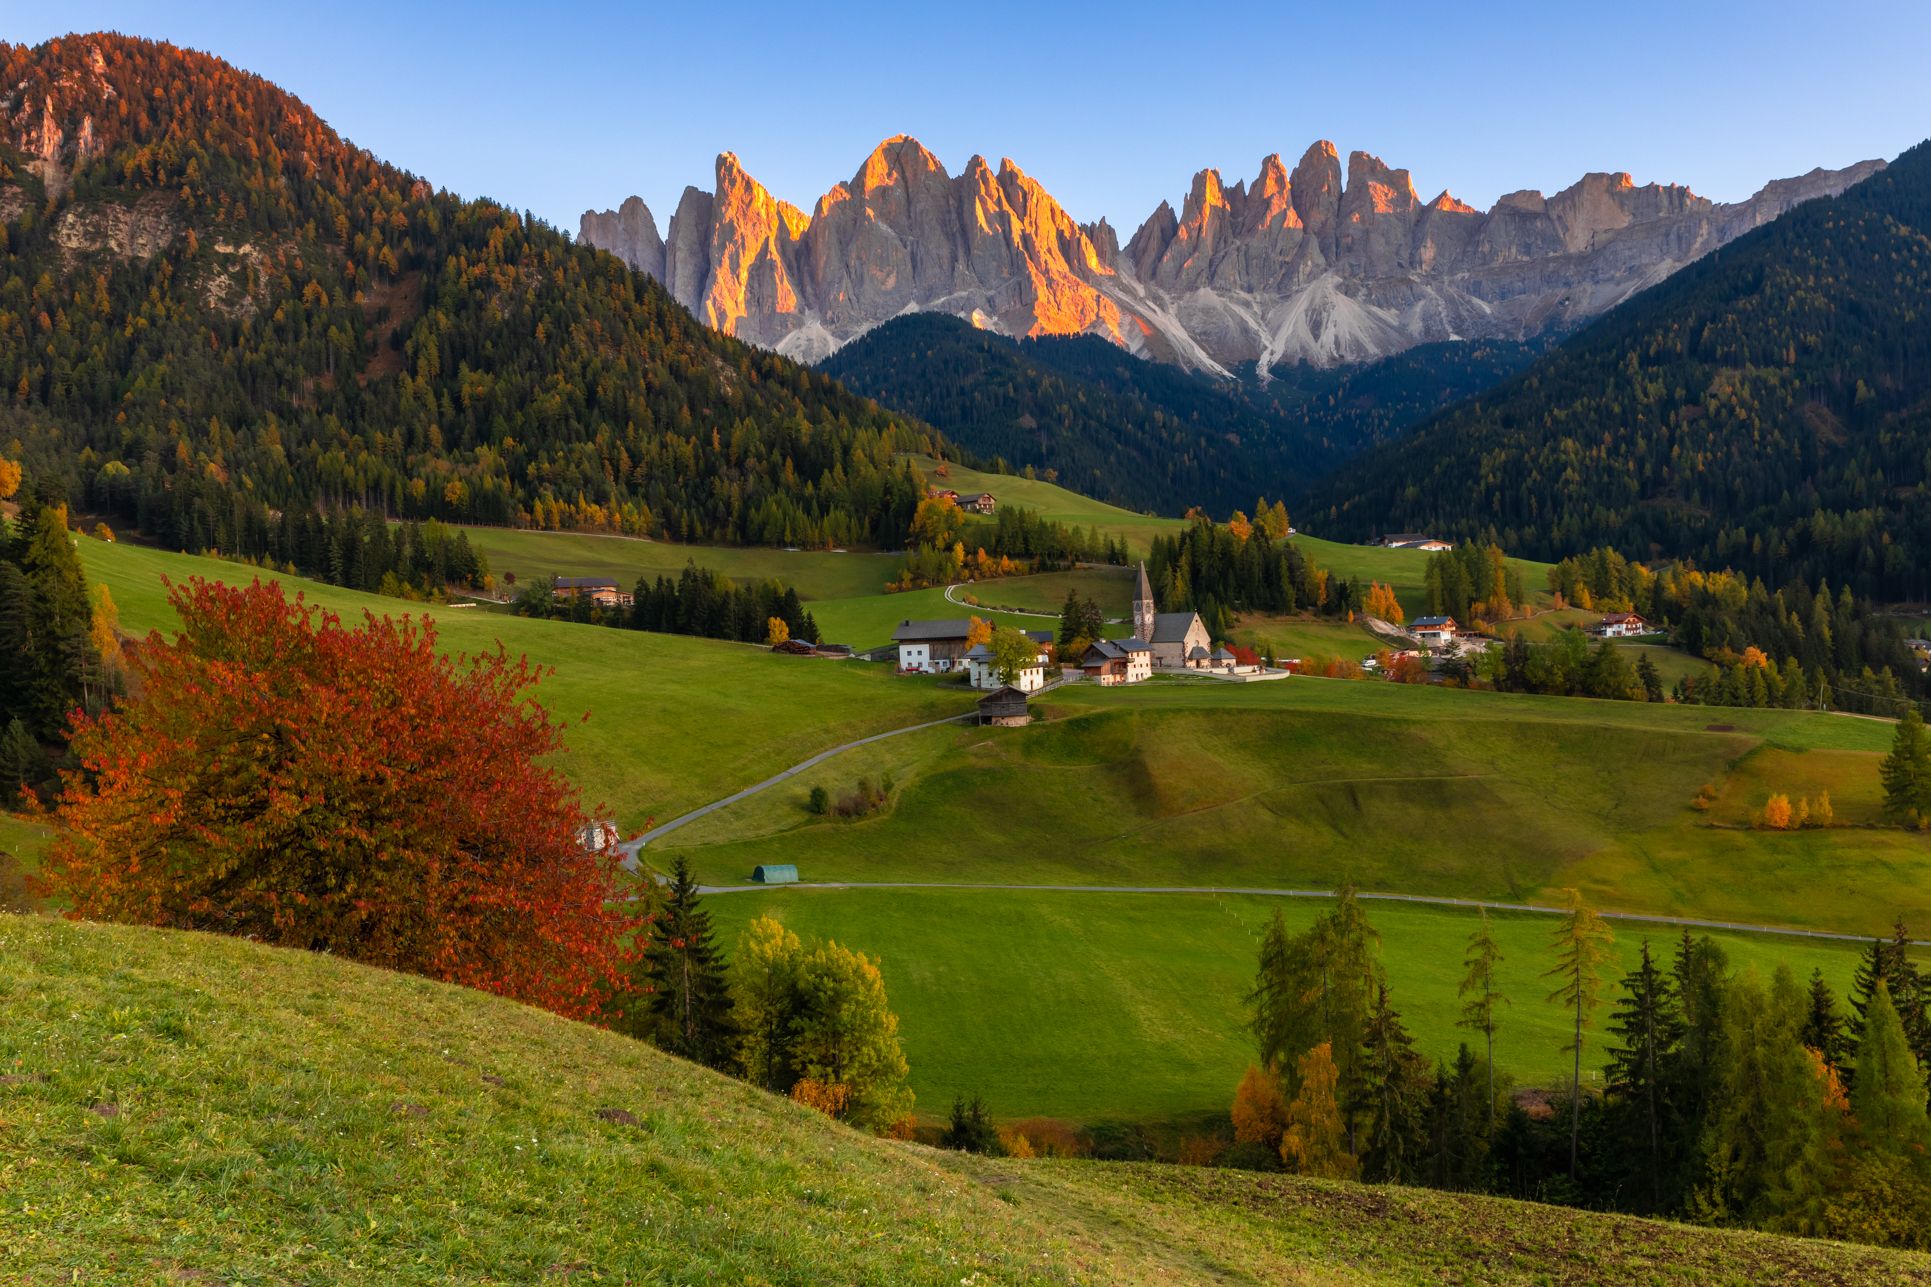 Dolomites, Italy, South Tirol, St. Maddalena,, Евгения Чех